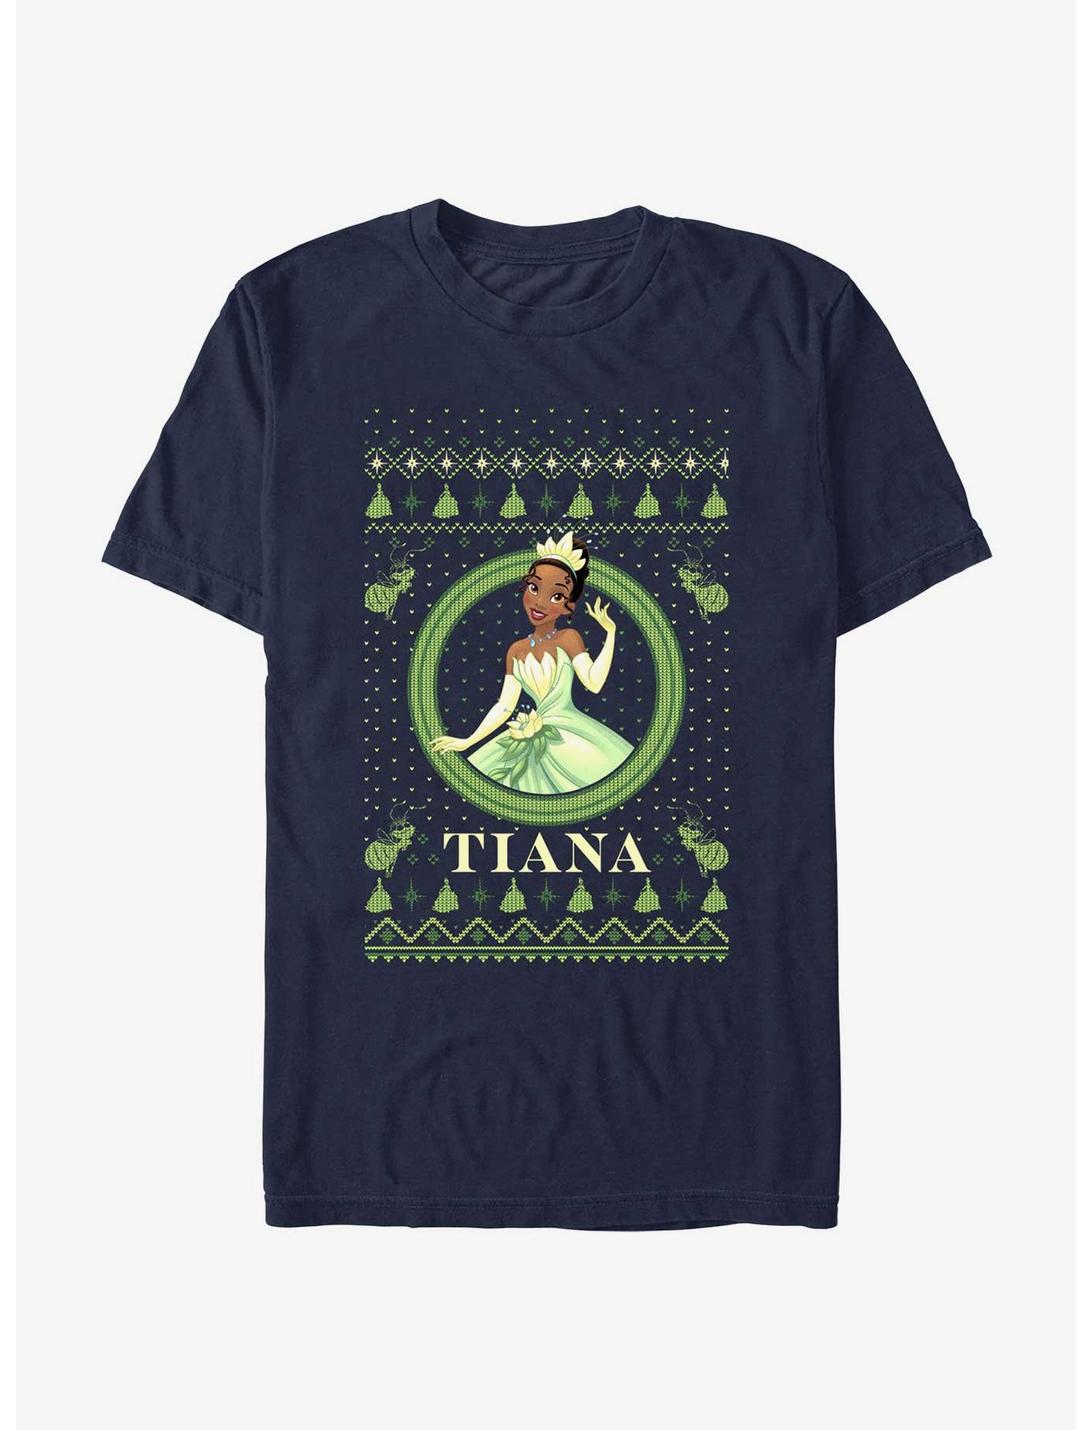 Disney Princess & The Frog Tiana Ugly Holiday T-Shirt, NAVY, hi-res